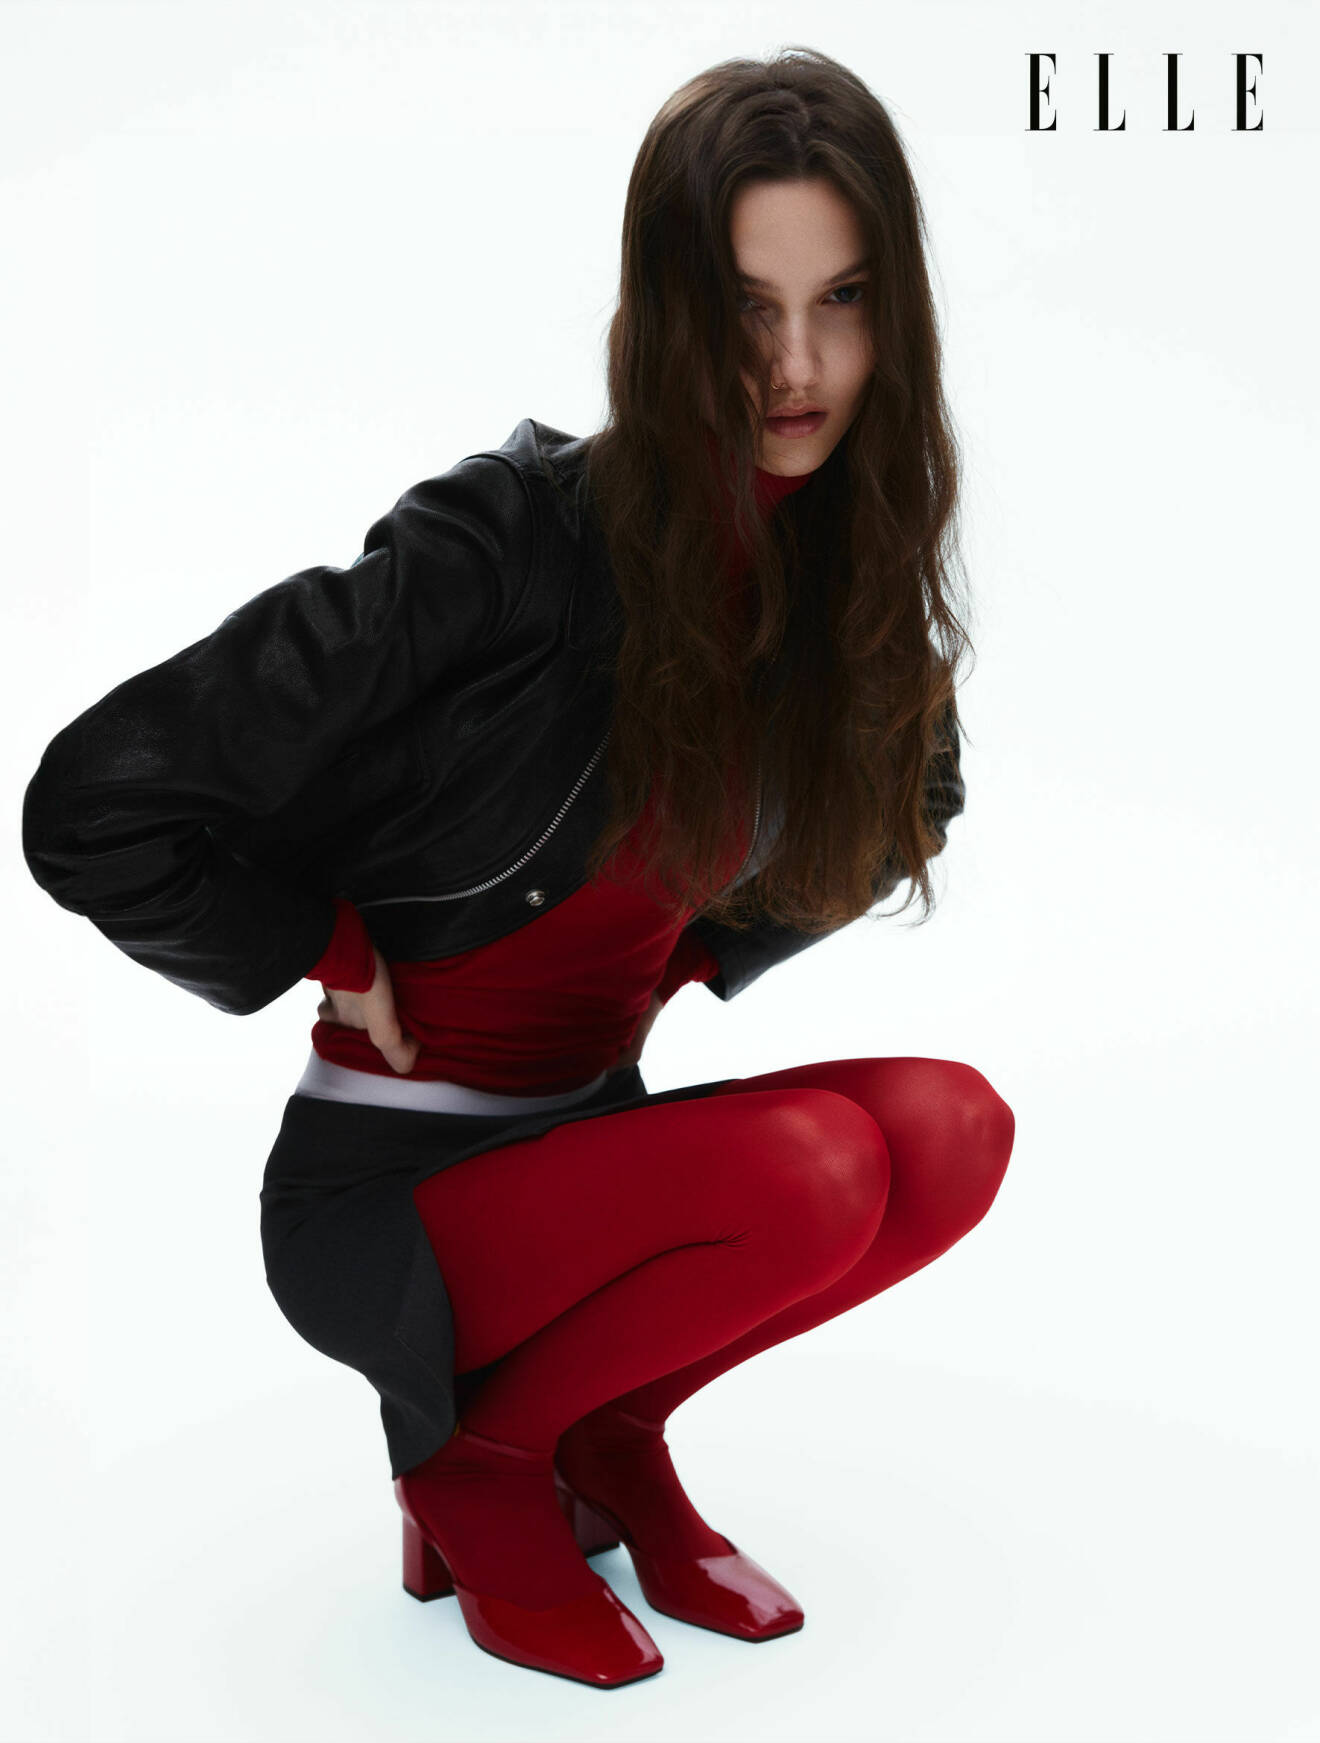 Modellen Alma sitter på huk, hon har på sig en svart jacka, röd polotröja, svart kjol och röda strumpbyxor